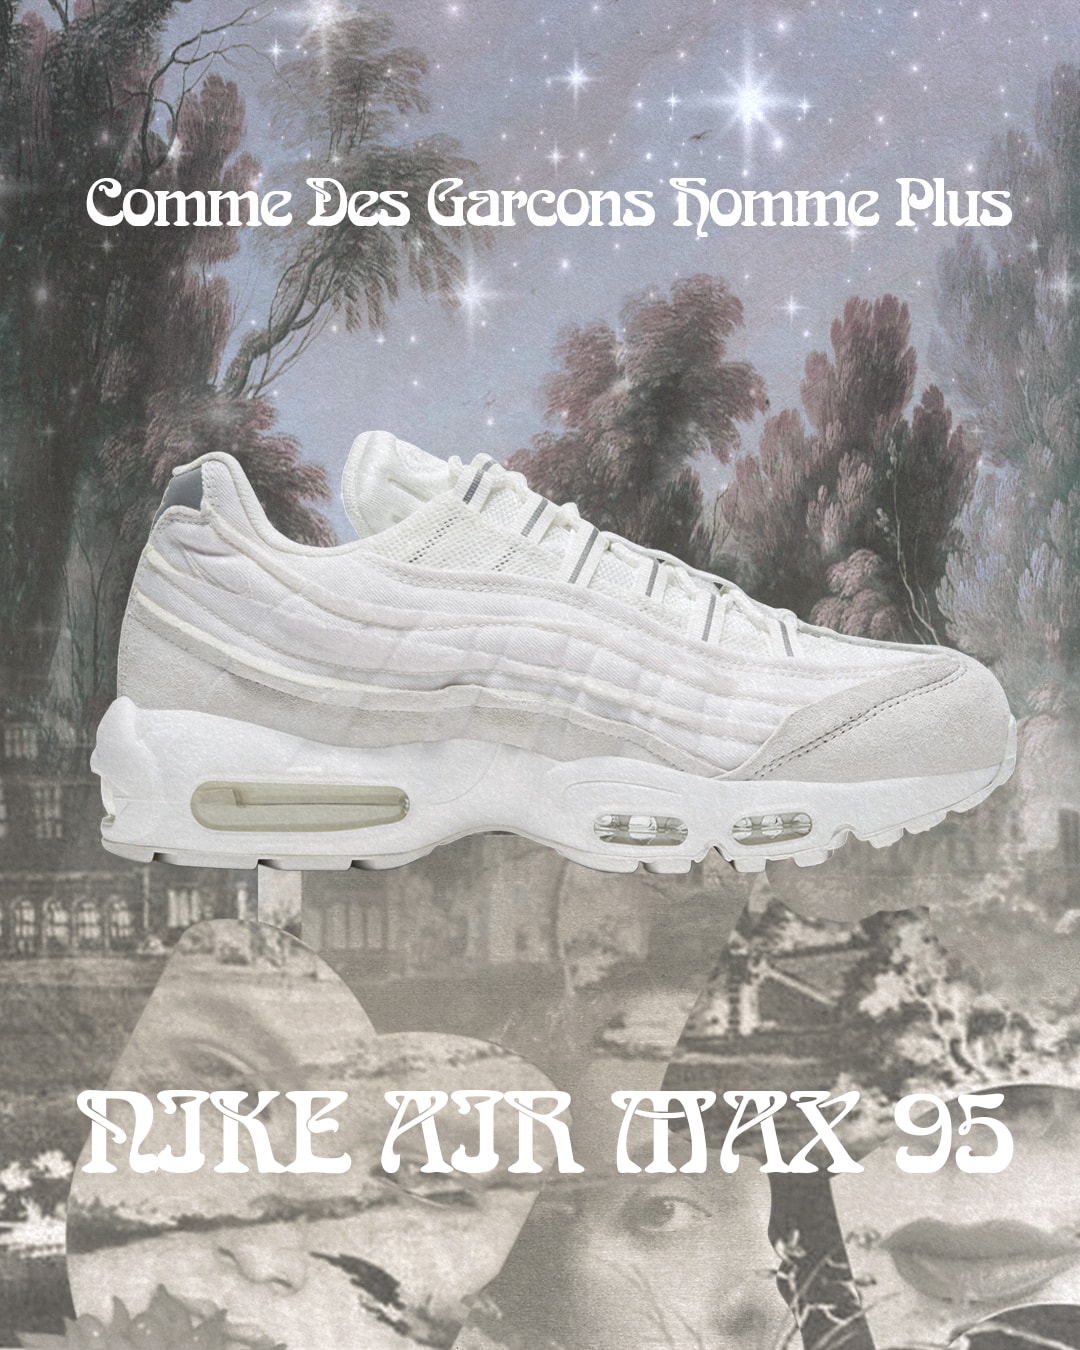 COMME des GARÇONS HOMME PLUS x Nike Air Max 95 聯乘鞋款台灣上架情報